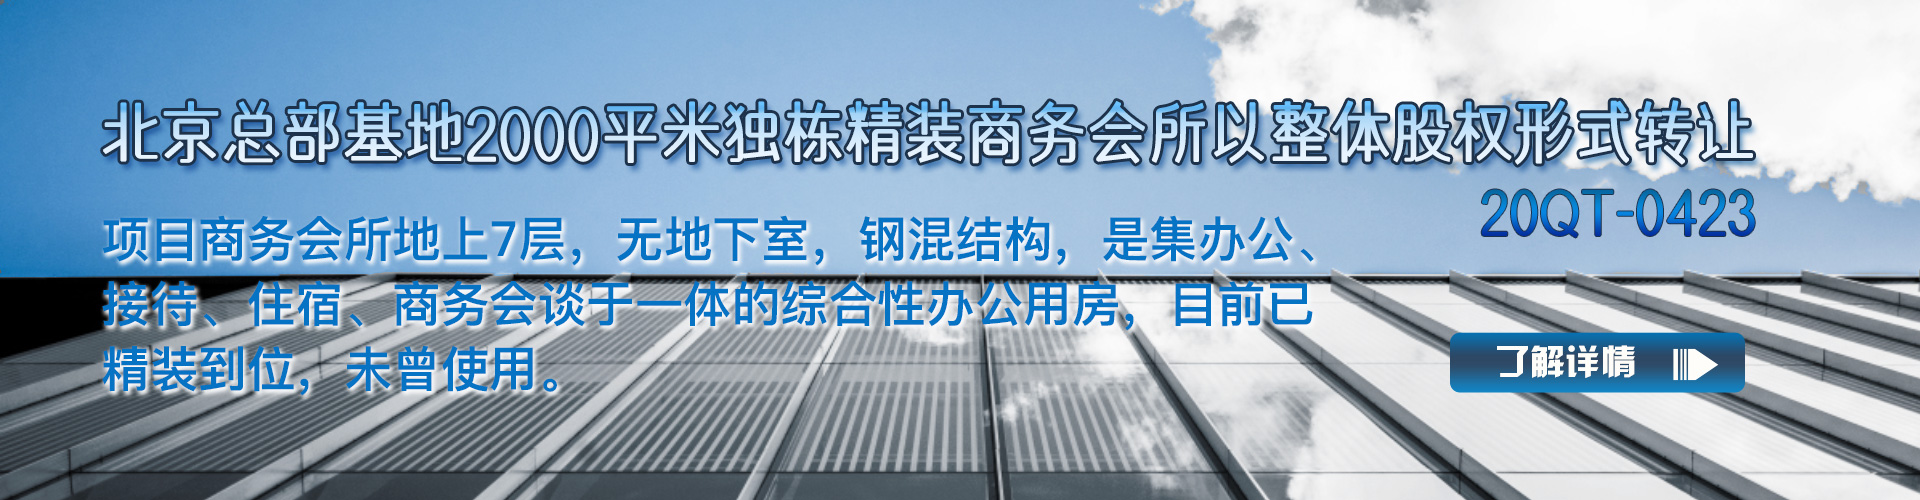 商务会所|北京总部基地2000平米独栋精装商务会所整体转让项目 以整体股权形式转让20QT-0423